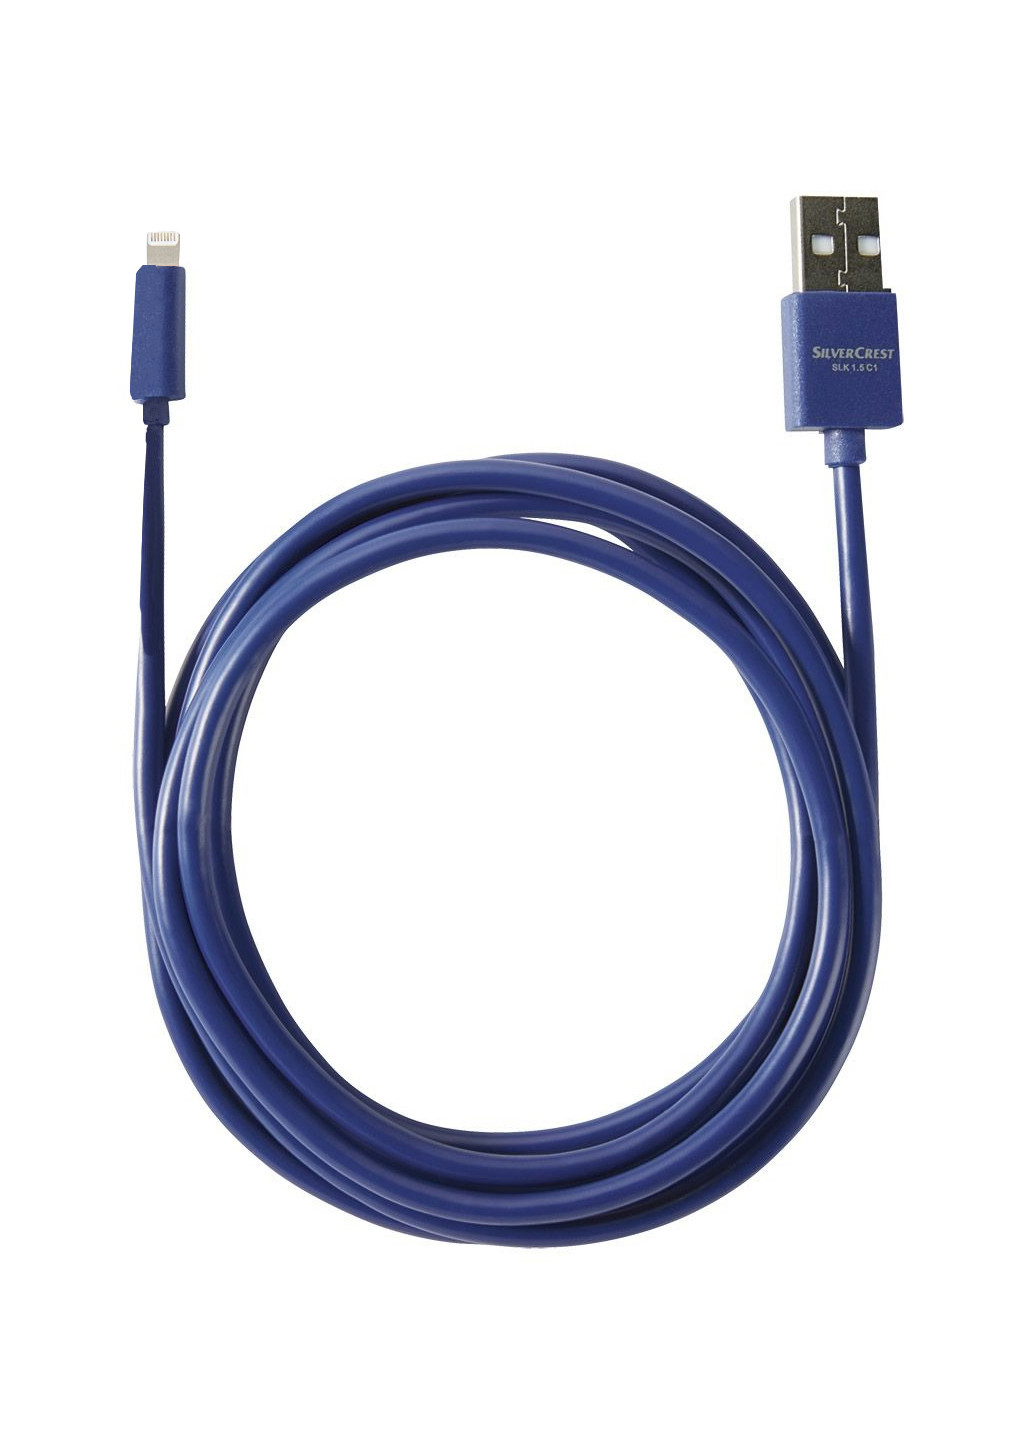 Кабель для зарядки и передачи данных USB/LIGHTNING синий Silver Crest (265624529)